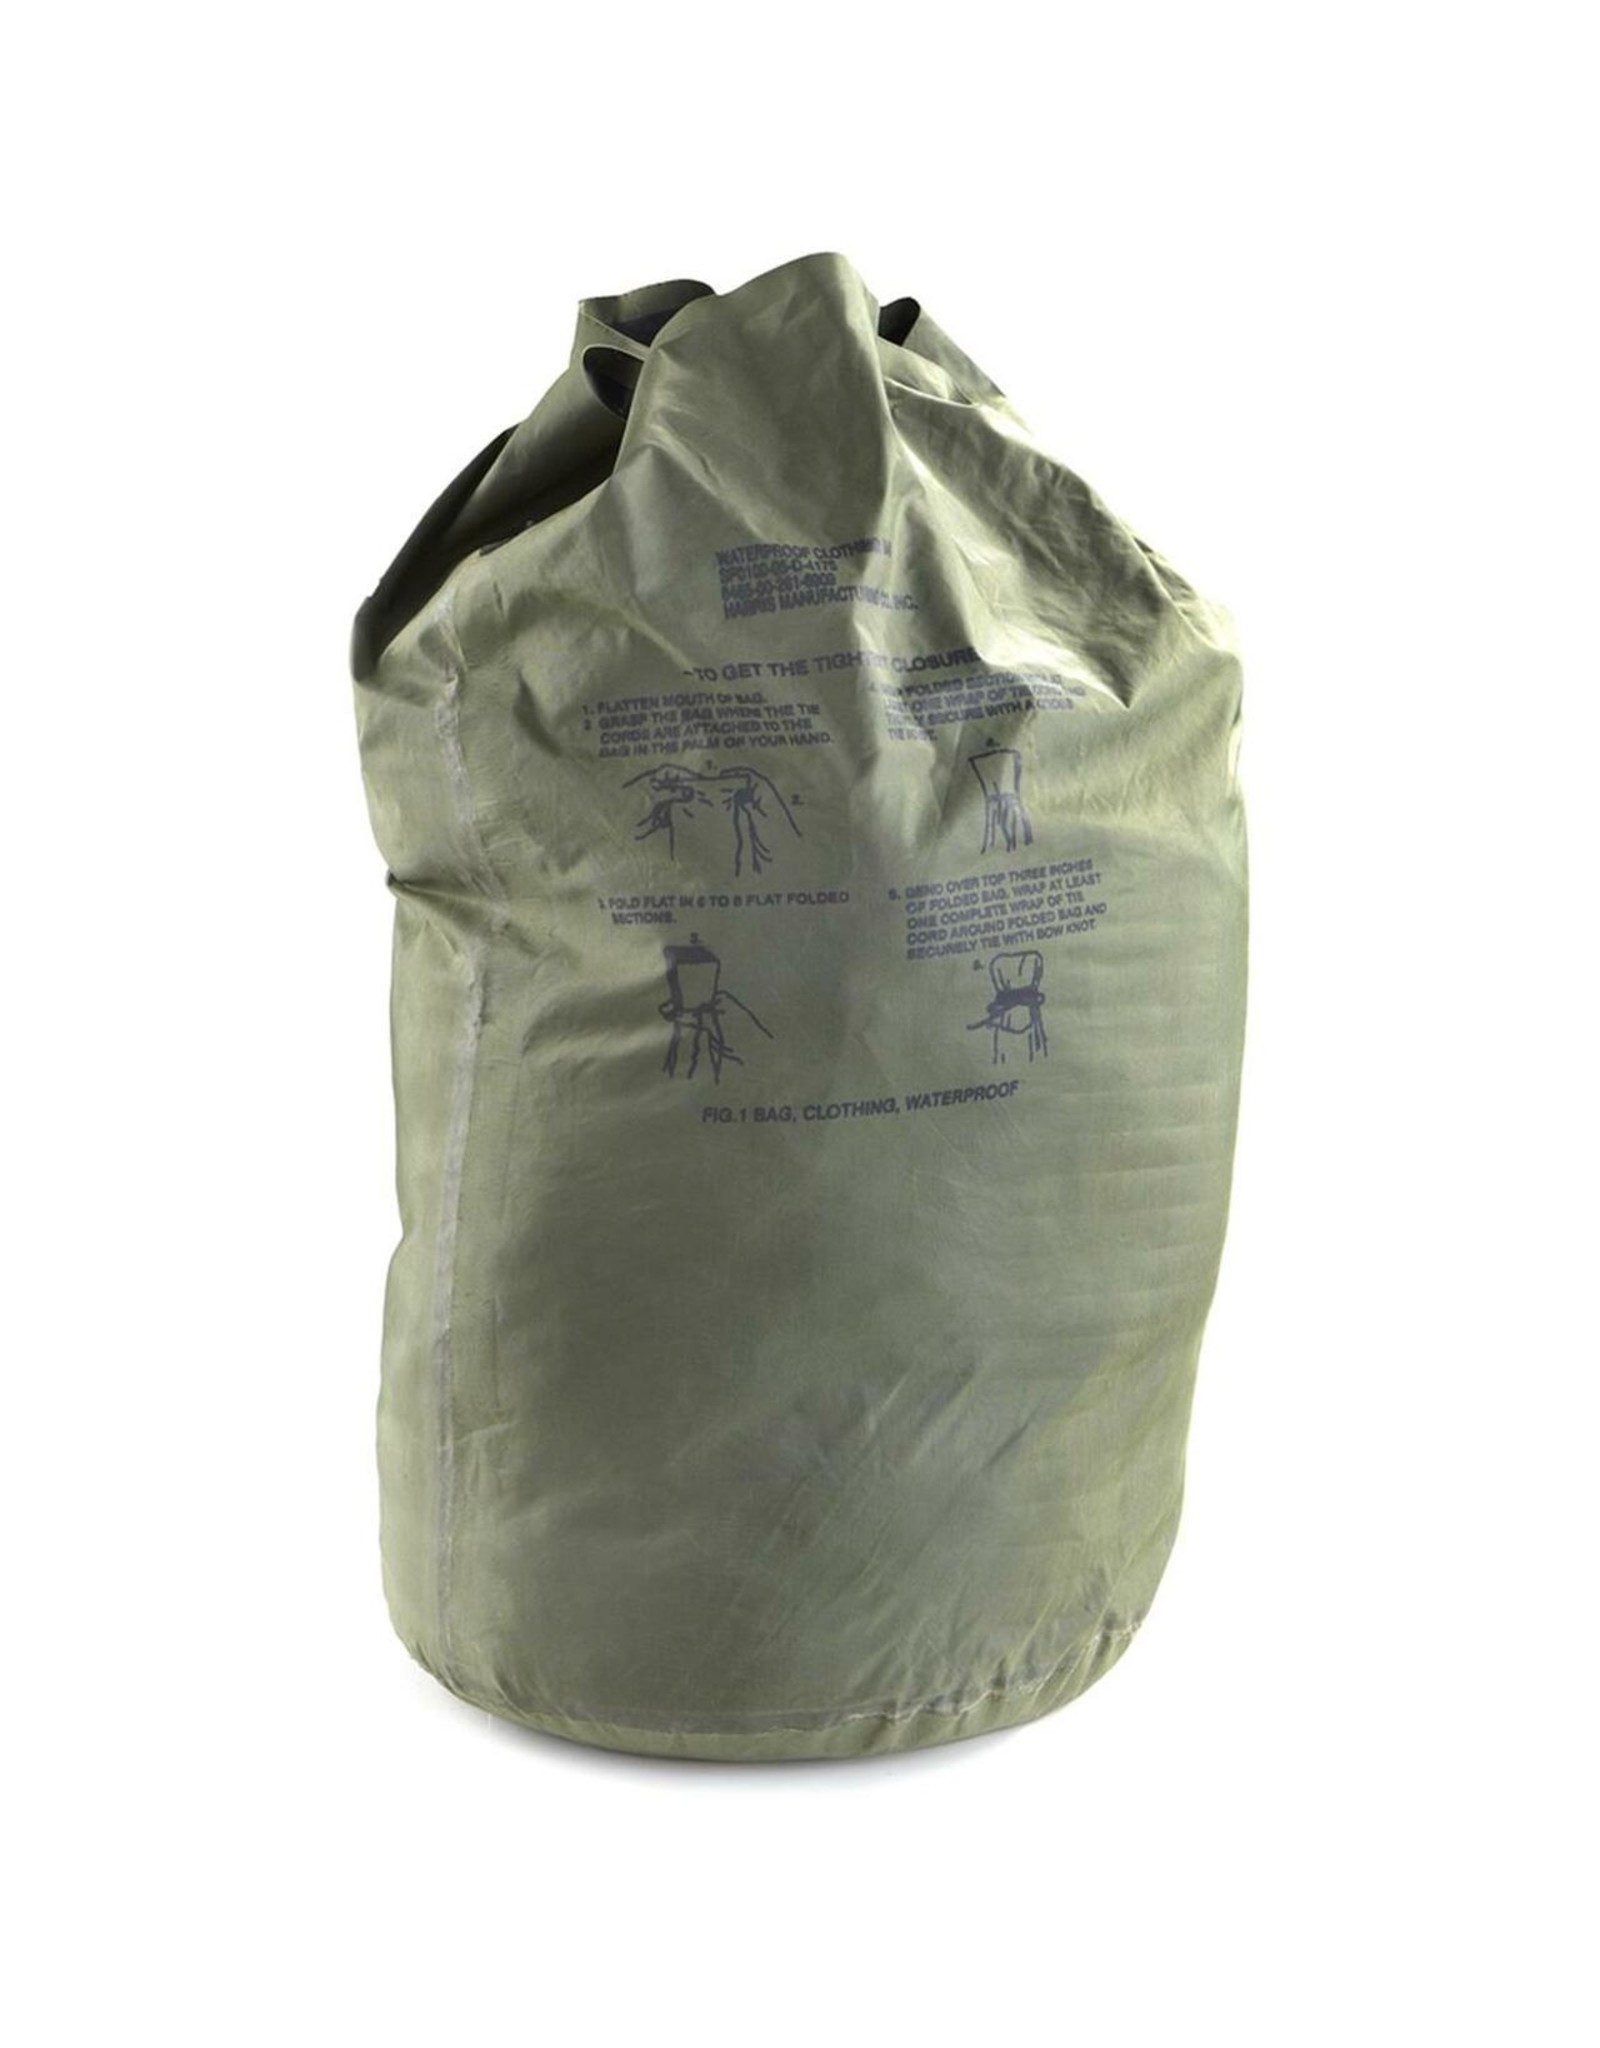 SURPLUS WATERPROOF CLOTHING BAG